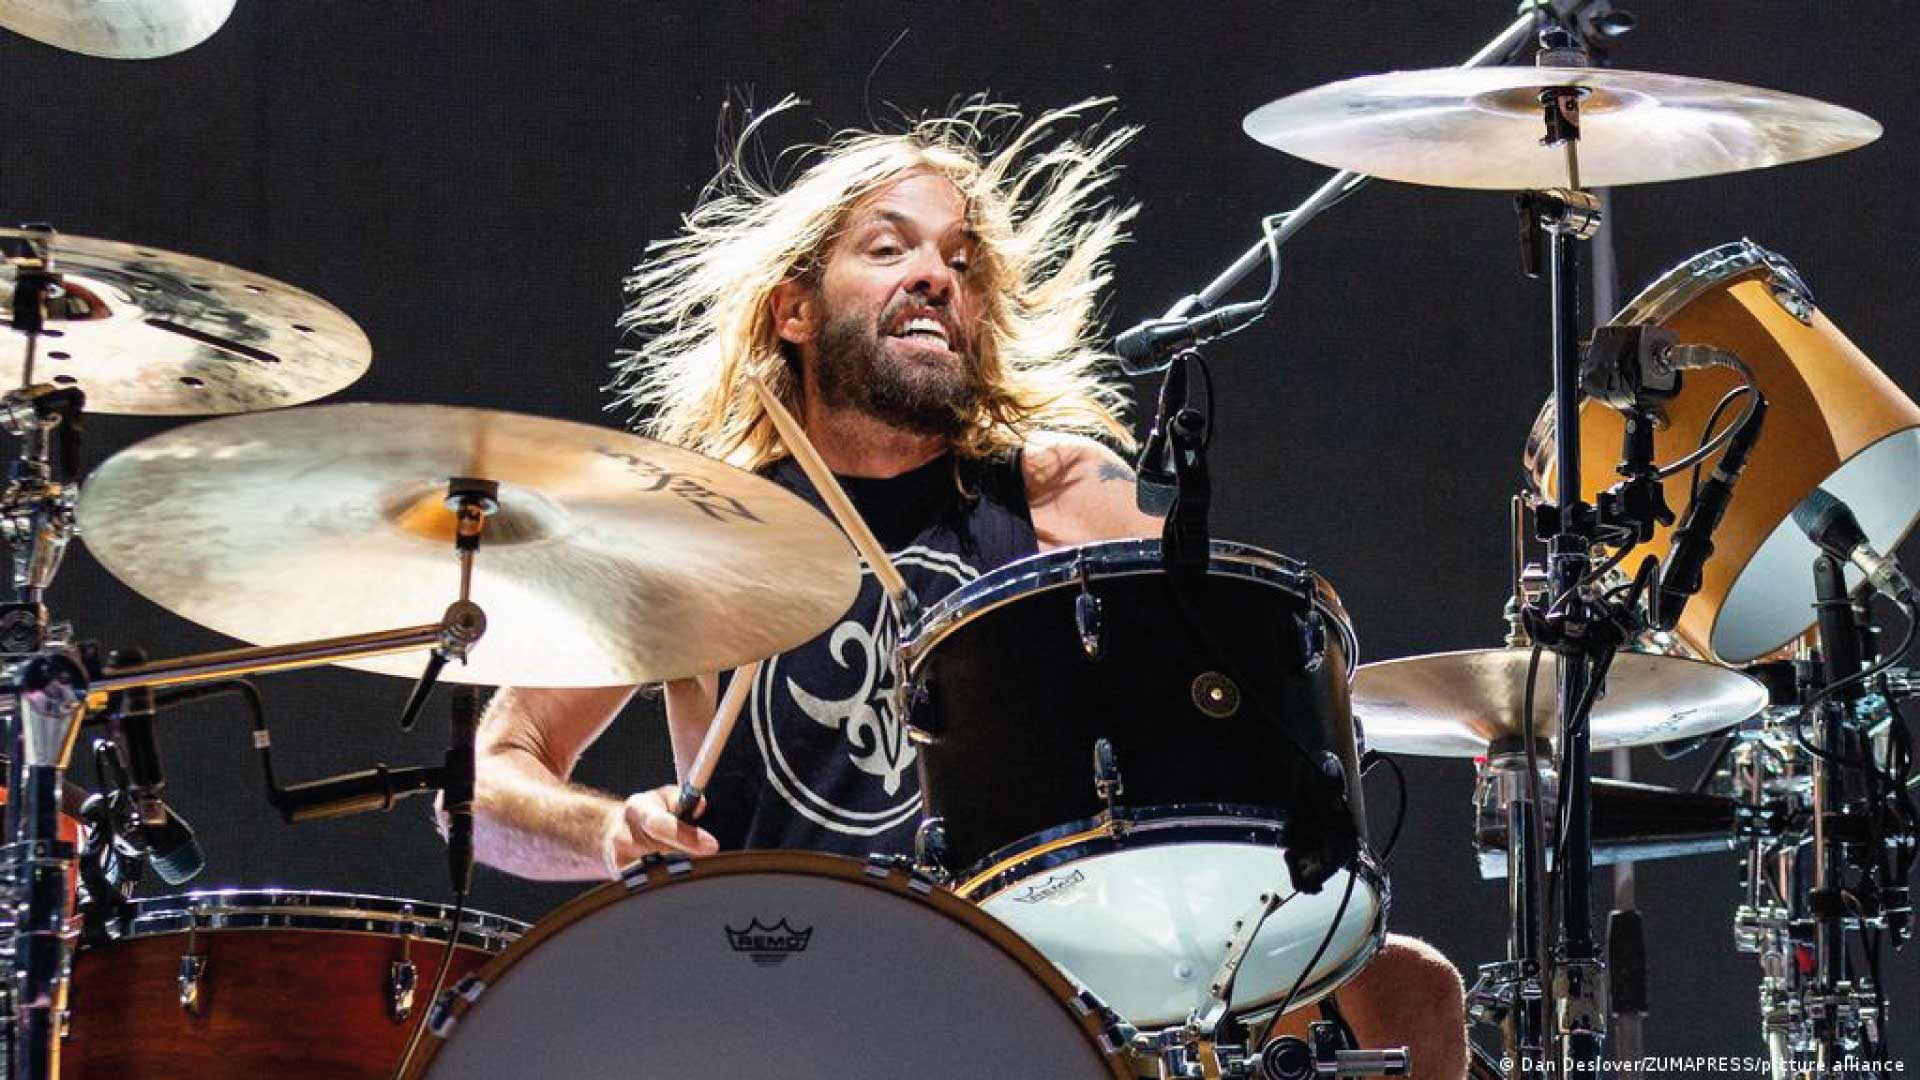 El guitarrista de Foo Fighters explota por especulaciones que han creado usuarios de Twitter por la muerte de Taylor Hawkins